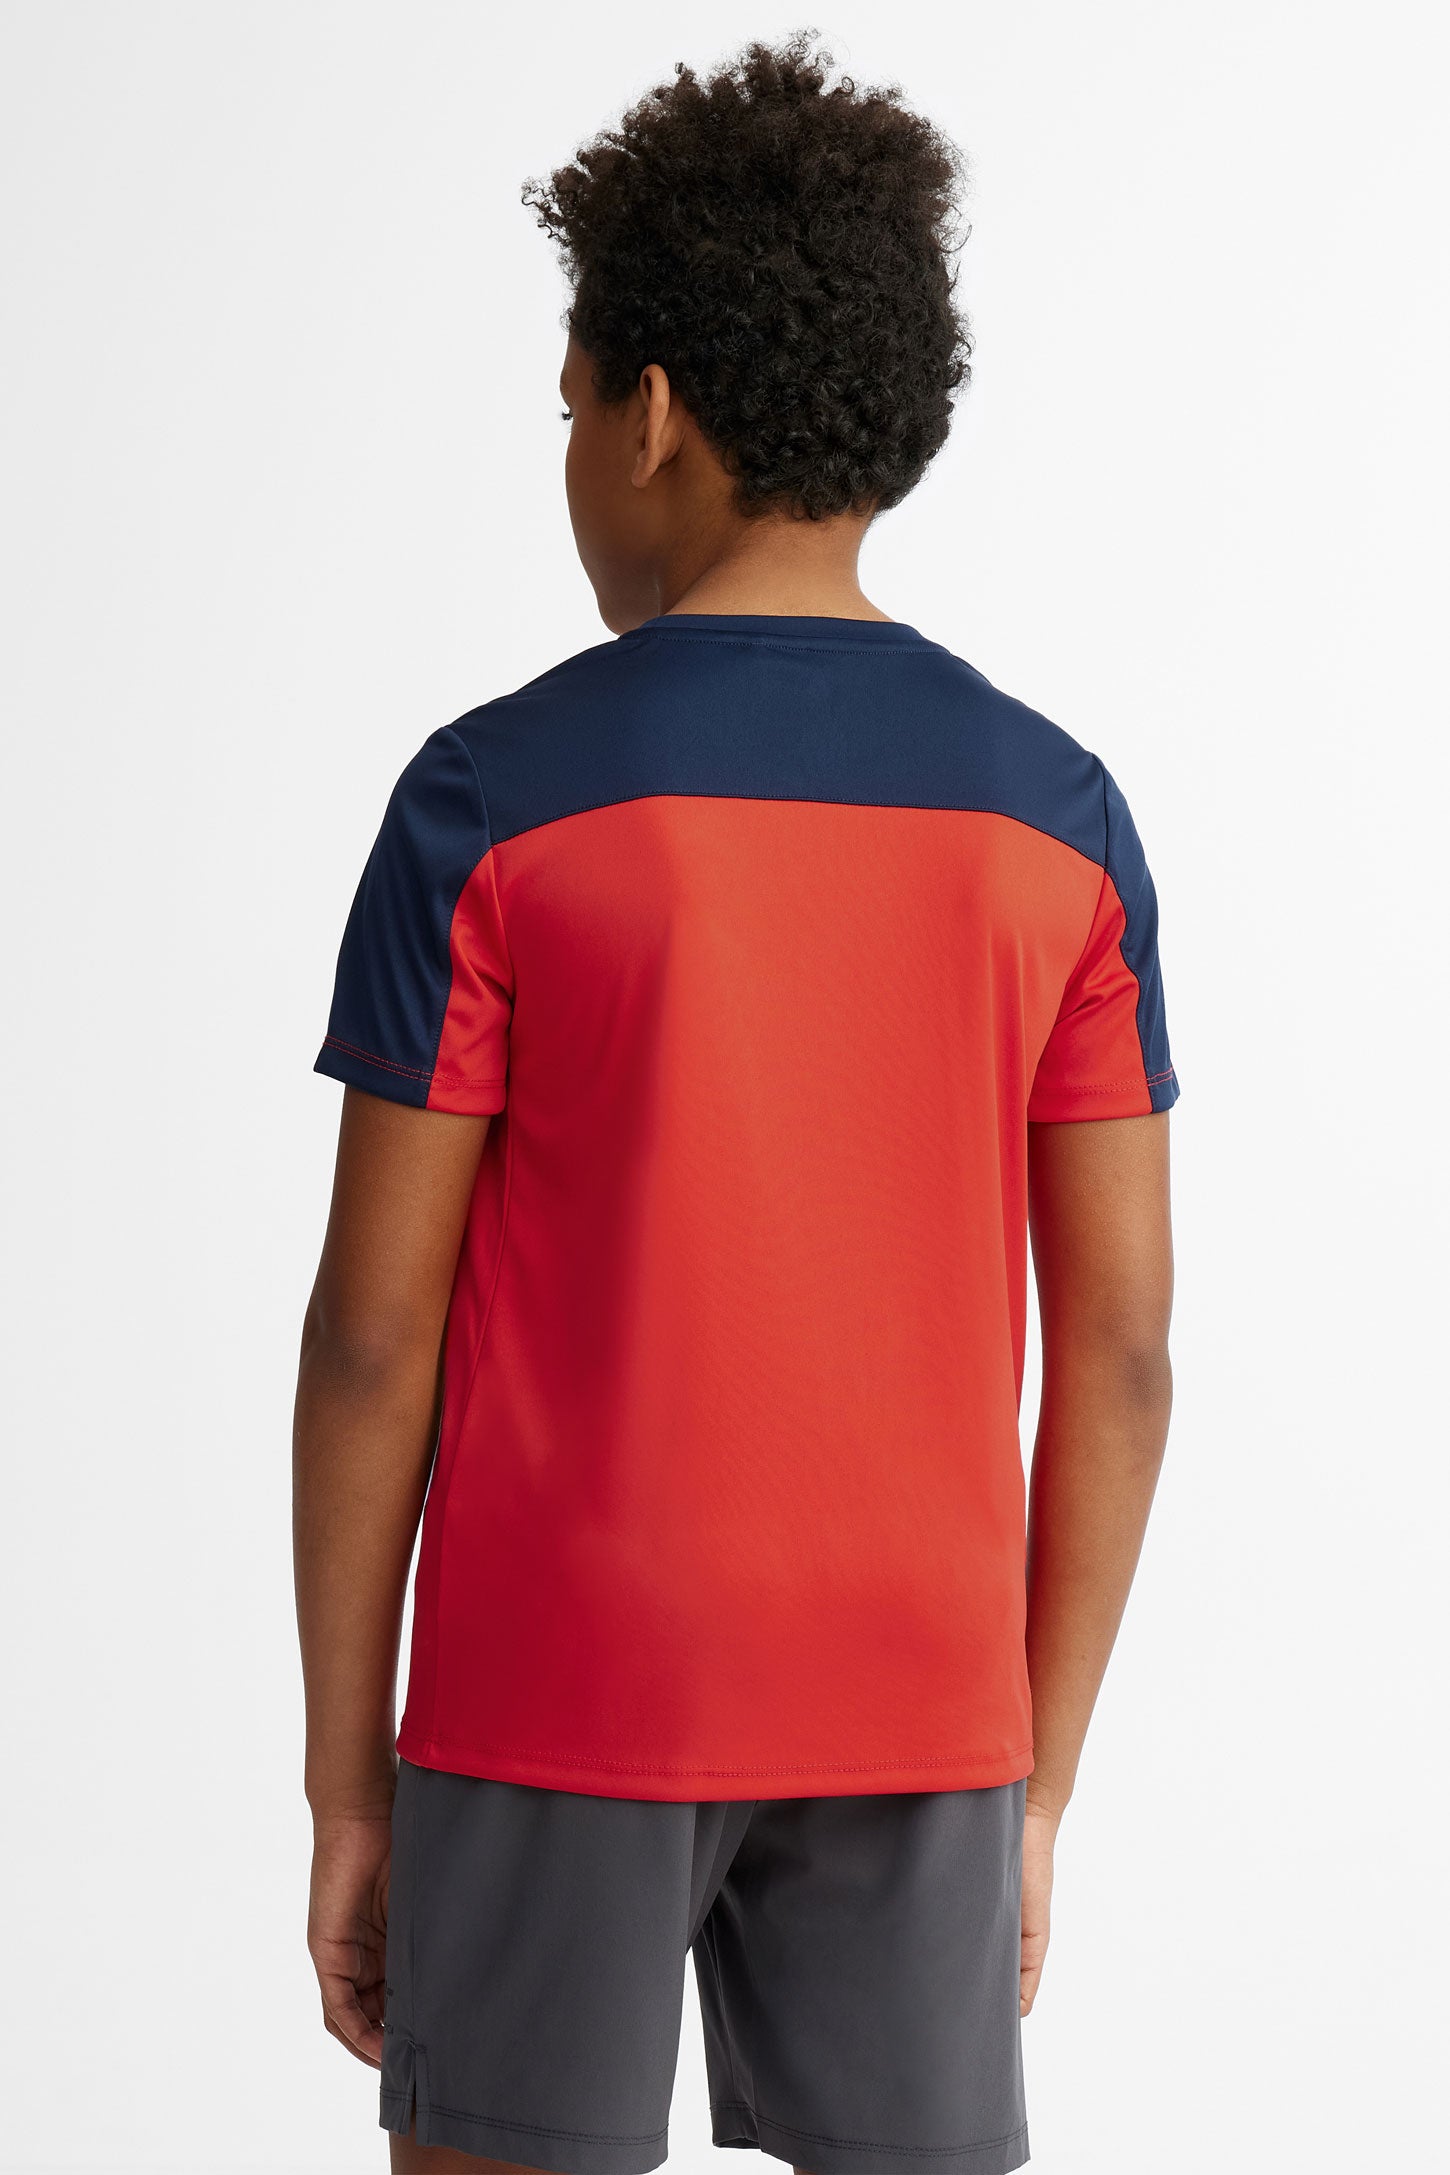 T-shirt col rond athlétique - Ado garçon && ROUGE